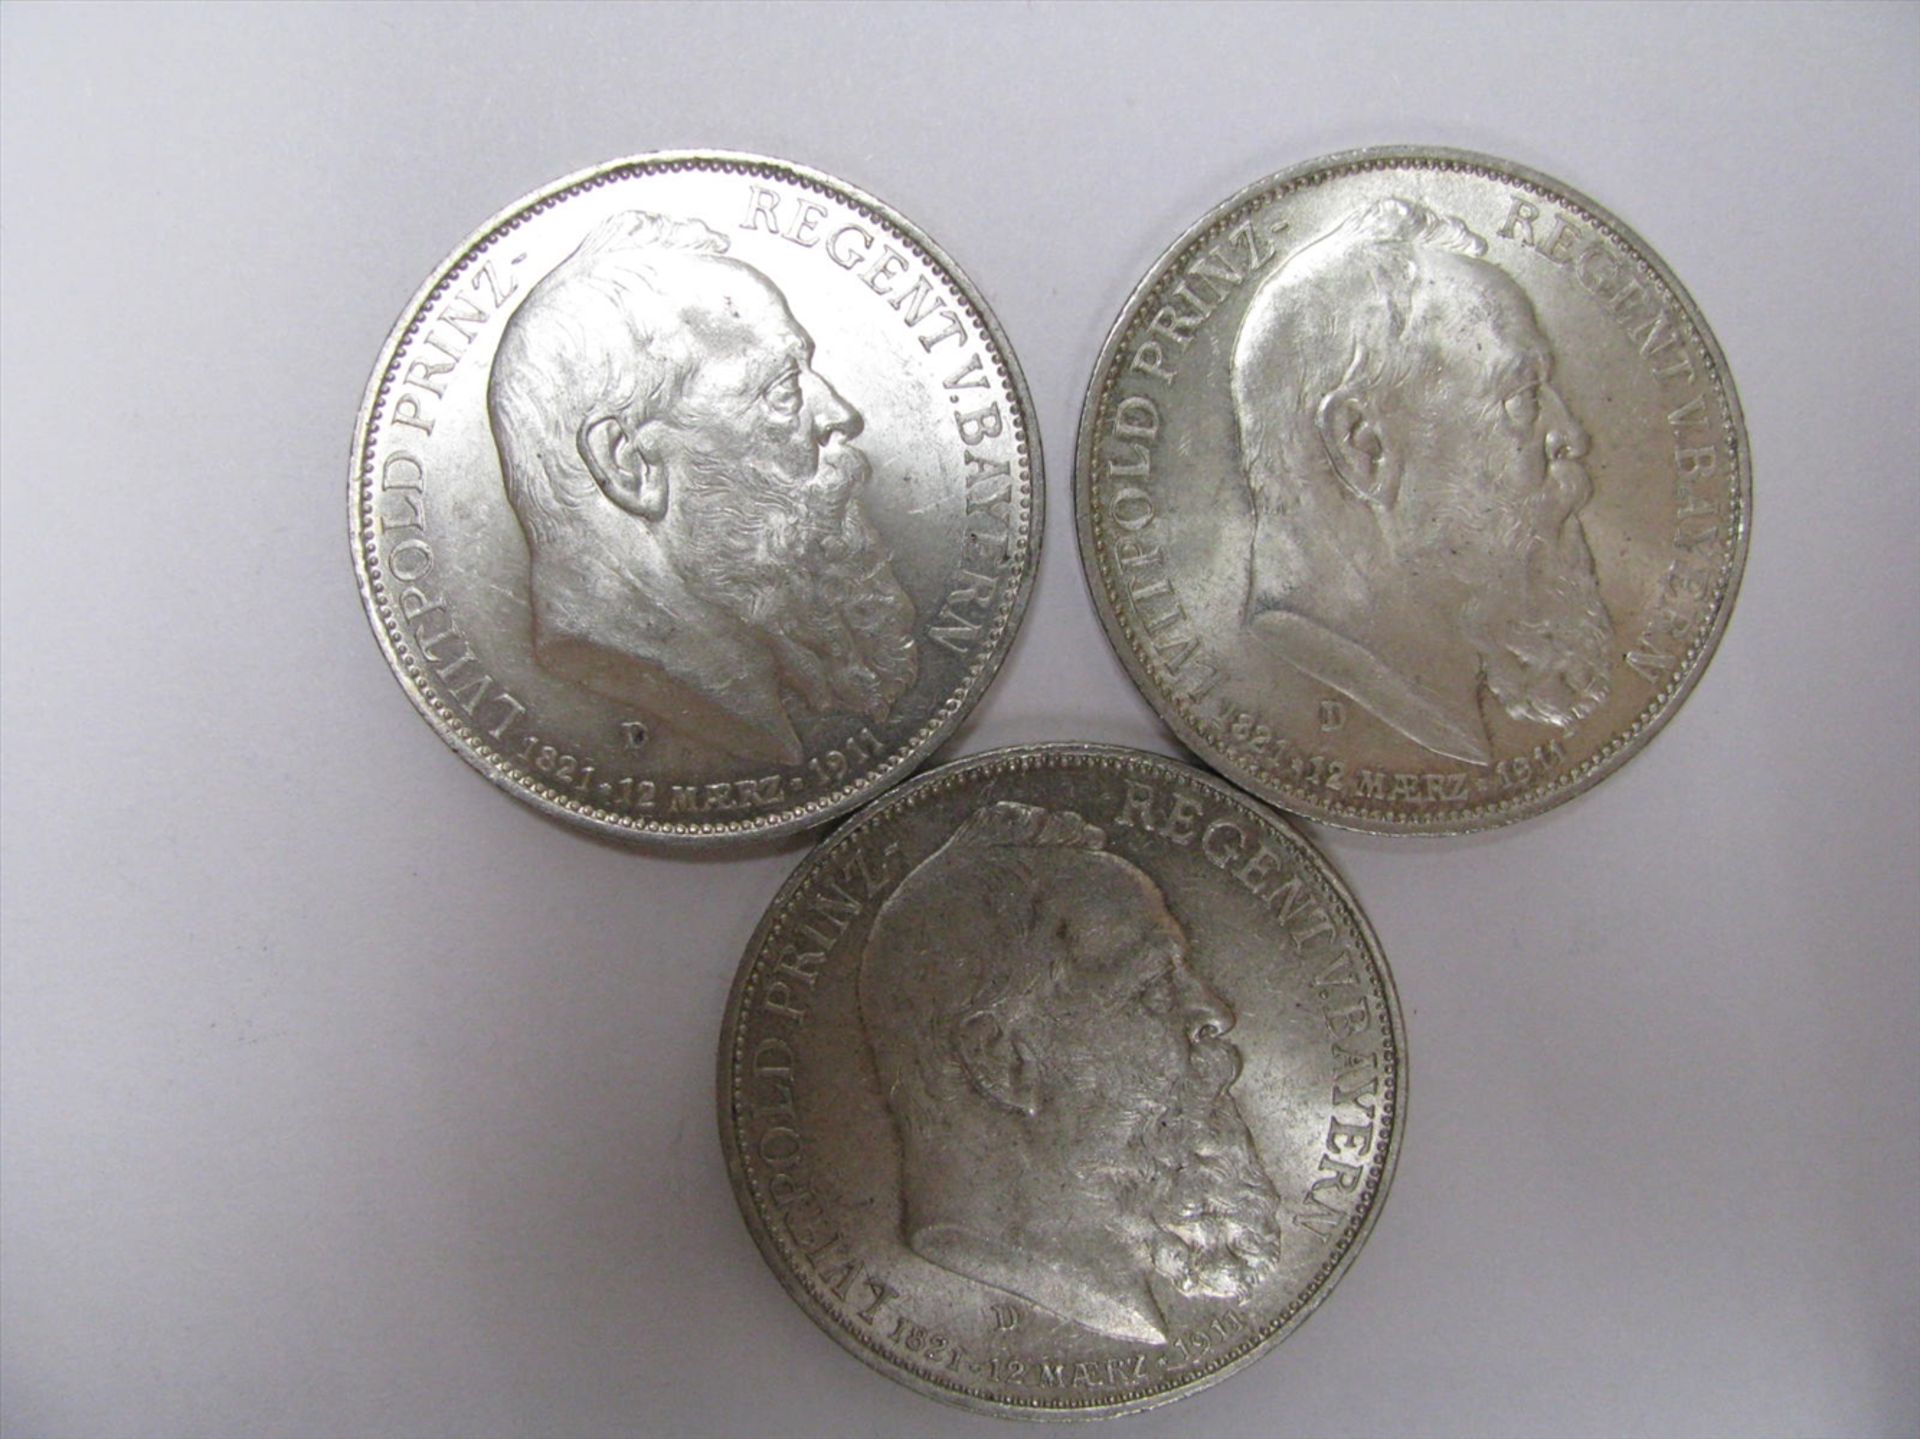 3 Silbermünzen, 3-Mark, Deutsches Reich, Luitpold von Bayern, 1911, 50 g, d 3,2 cm.- - -19.00 %